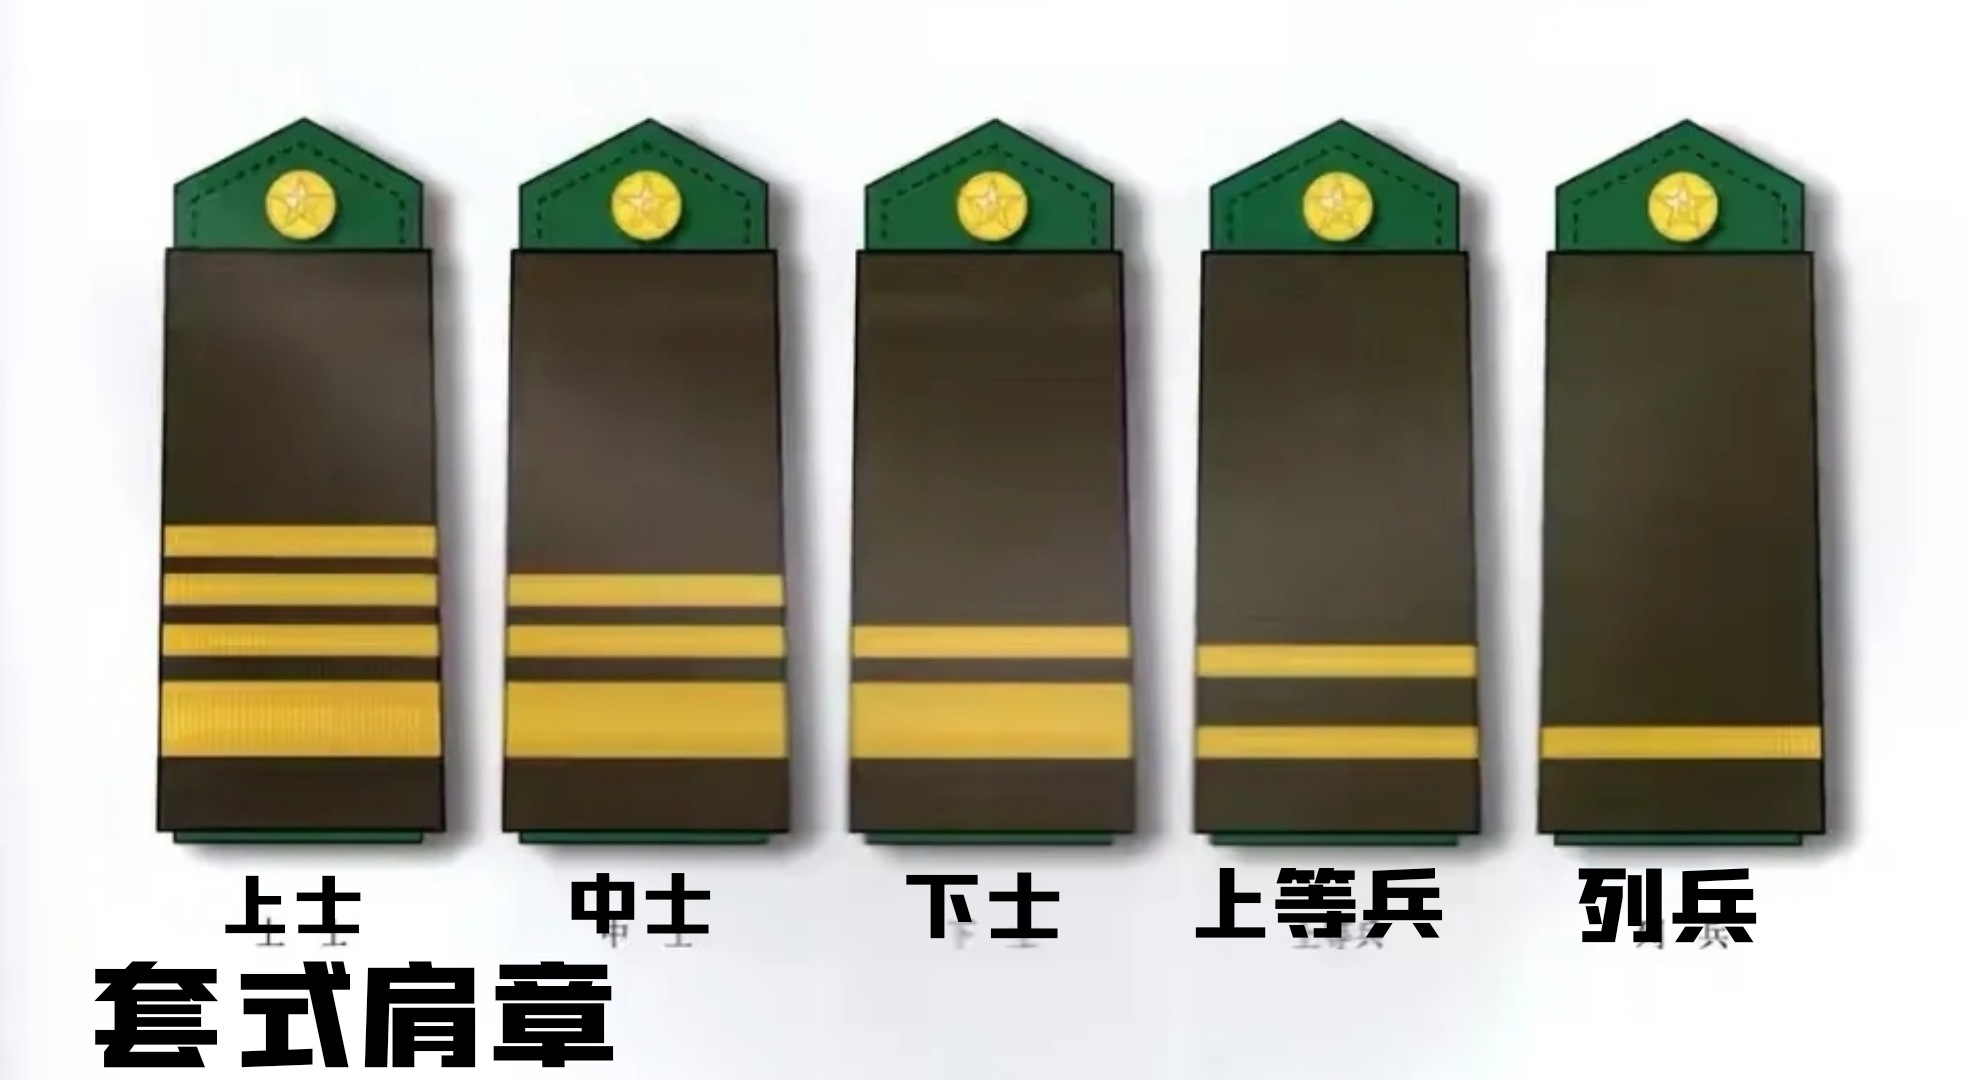 以相近军服颜色的纯色为底板,上面镶嵌的军衔条纹也以更加简洁的